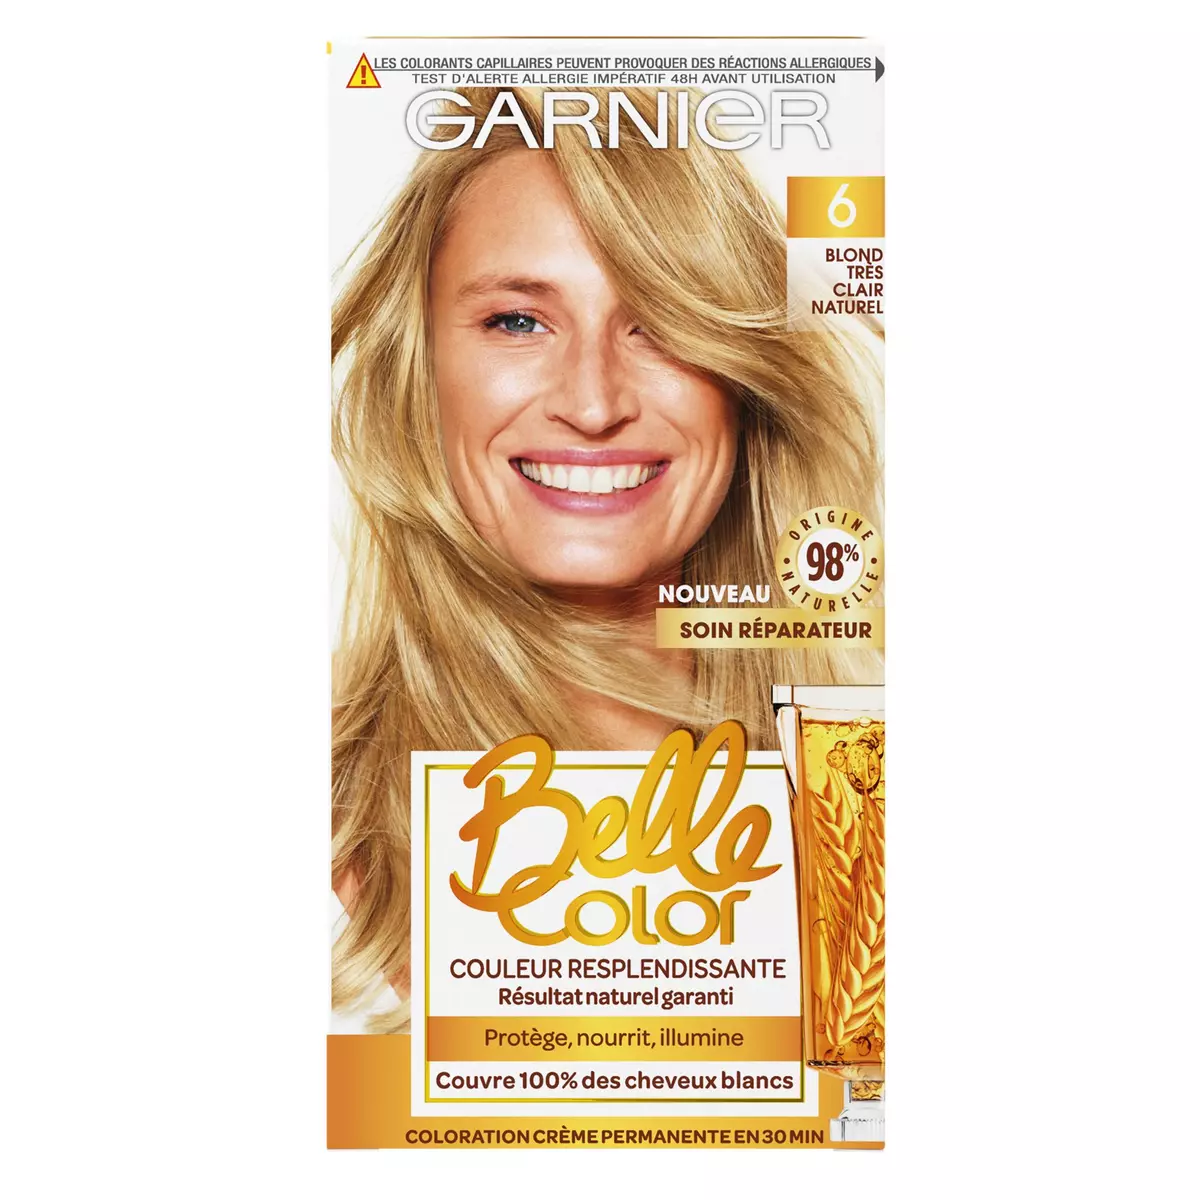 GARNIER Belle color coloration permanente 06 blond très clair naturel 3 produits 1 kit